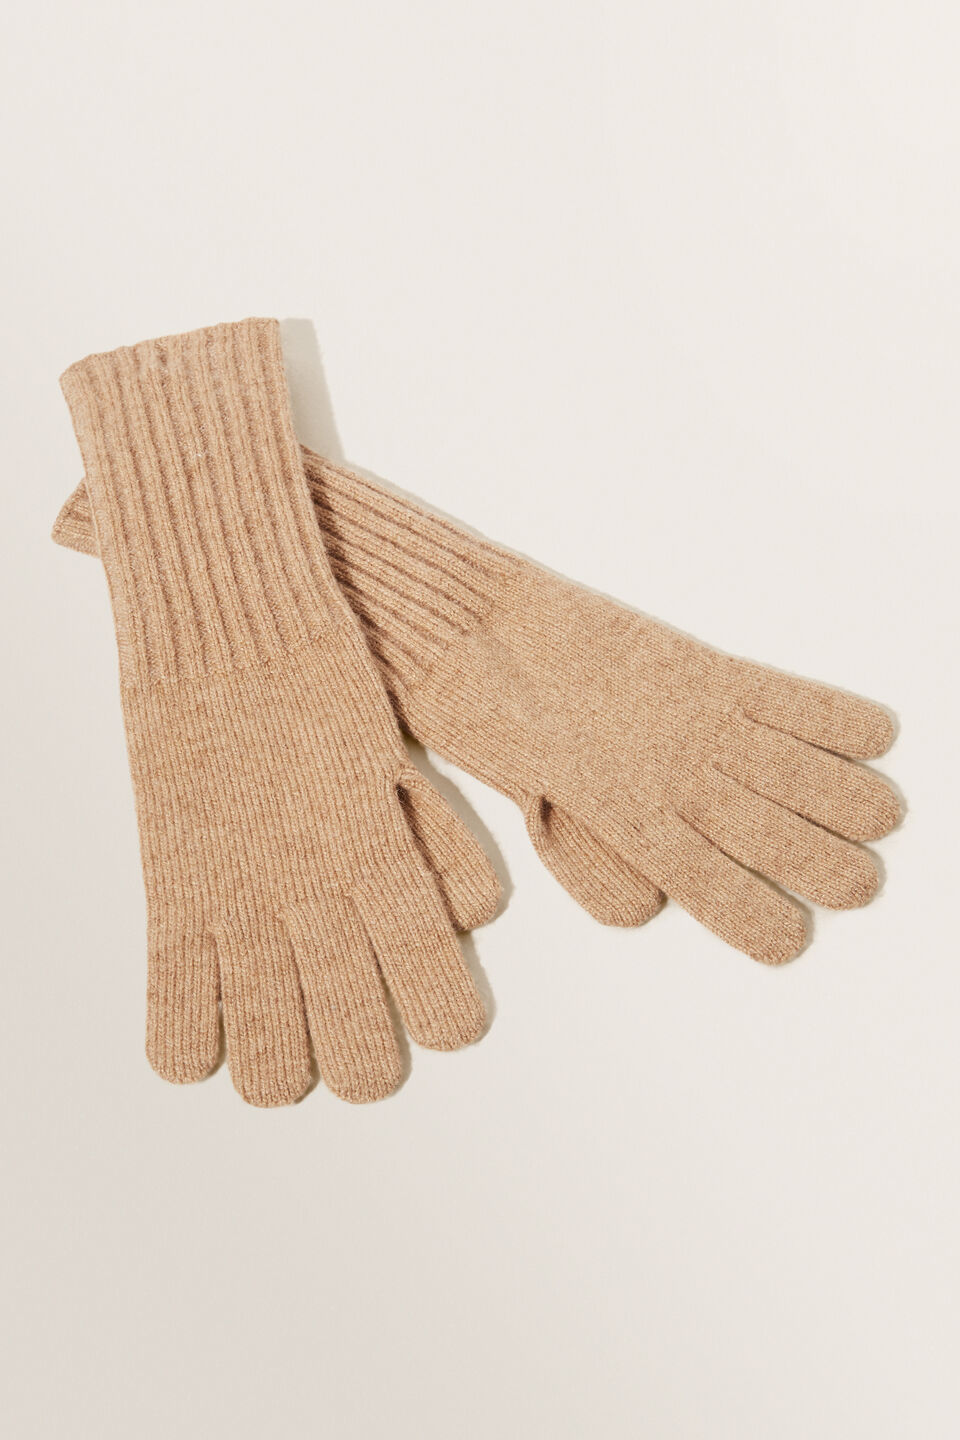 Rib Knit Gloves  Honey Dew